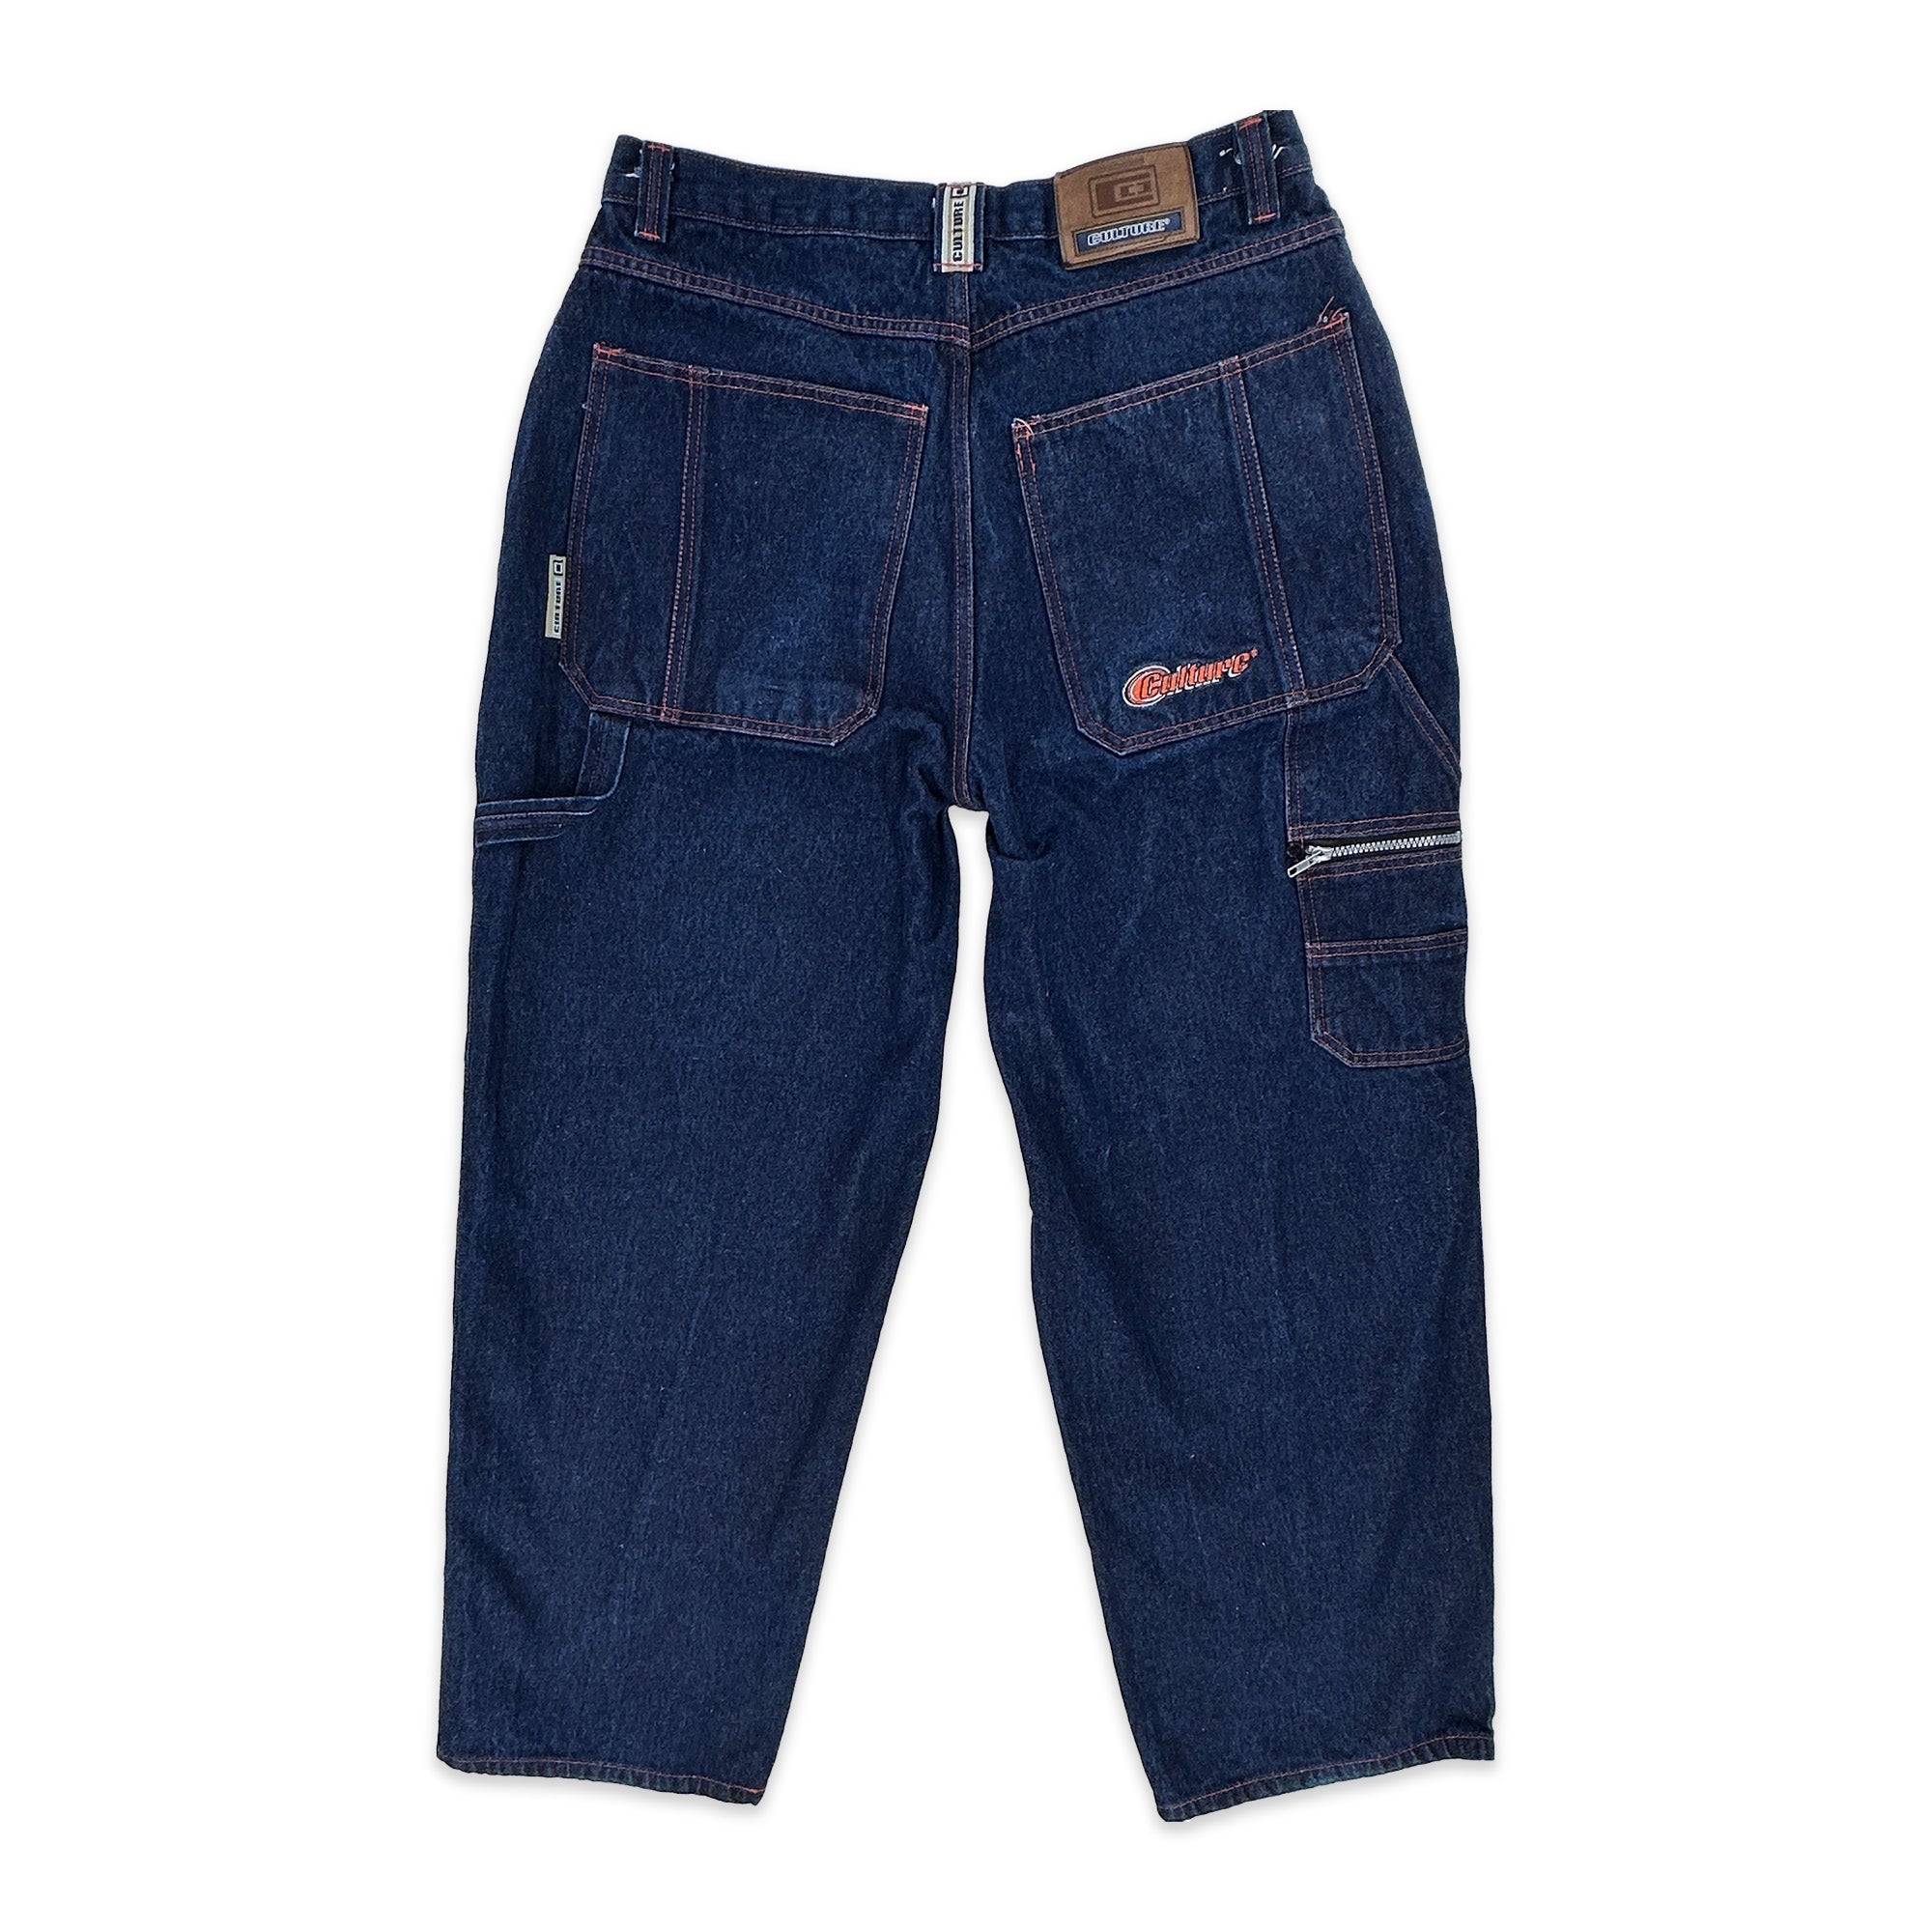 Vtg southpole jeans 34x32 - Gem